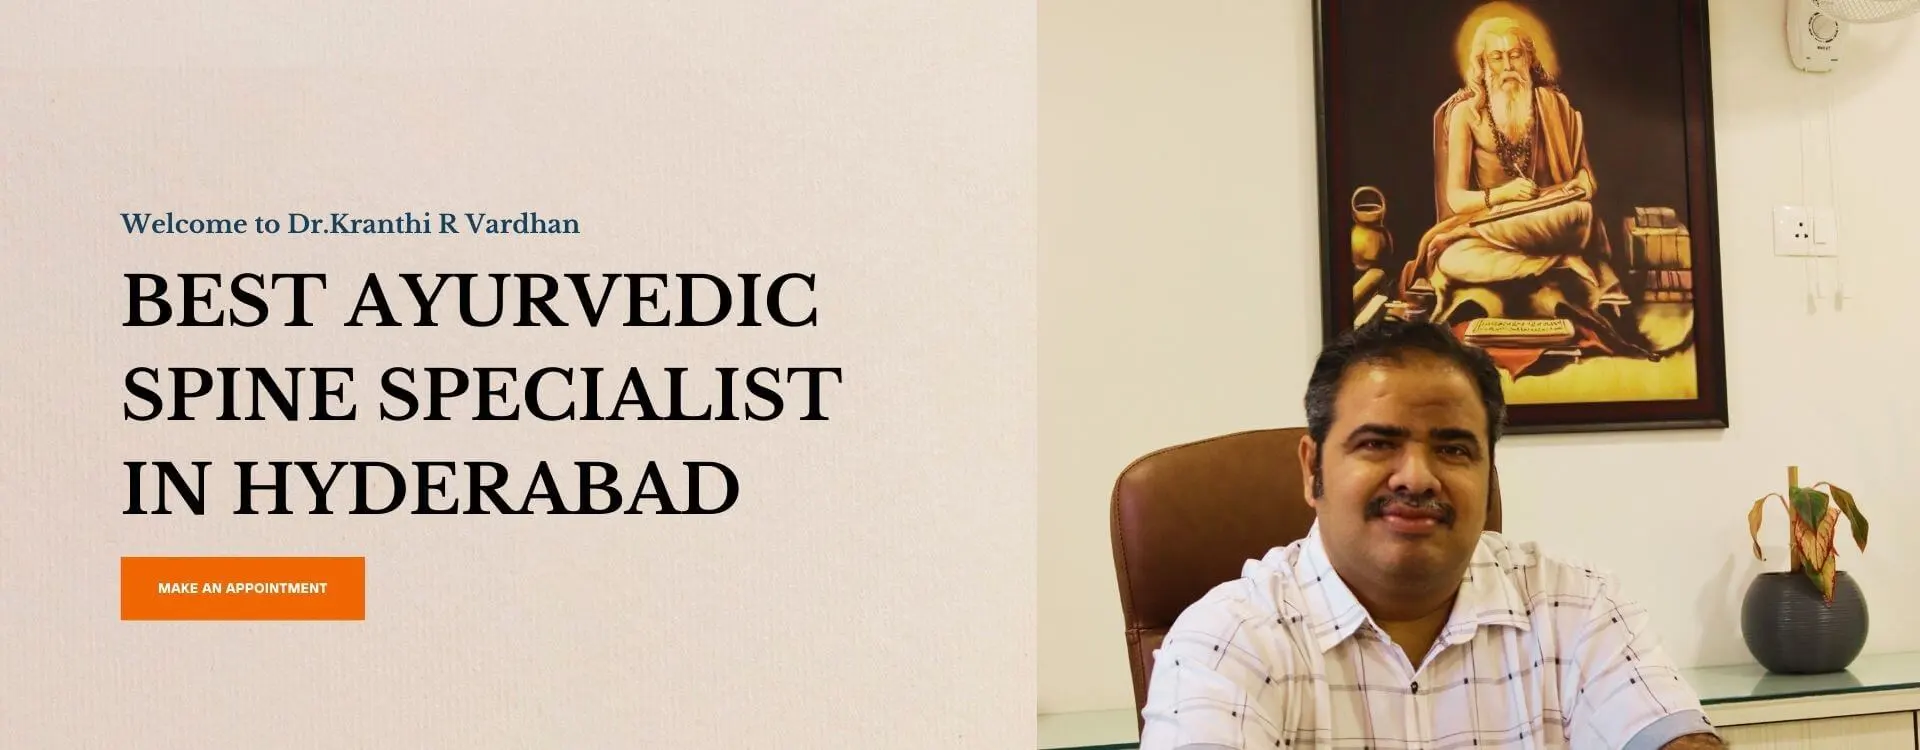 Best Ayurvedic Doctor in Hyderabad